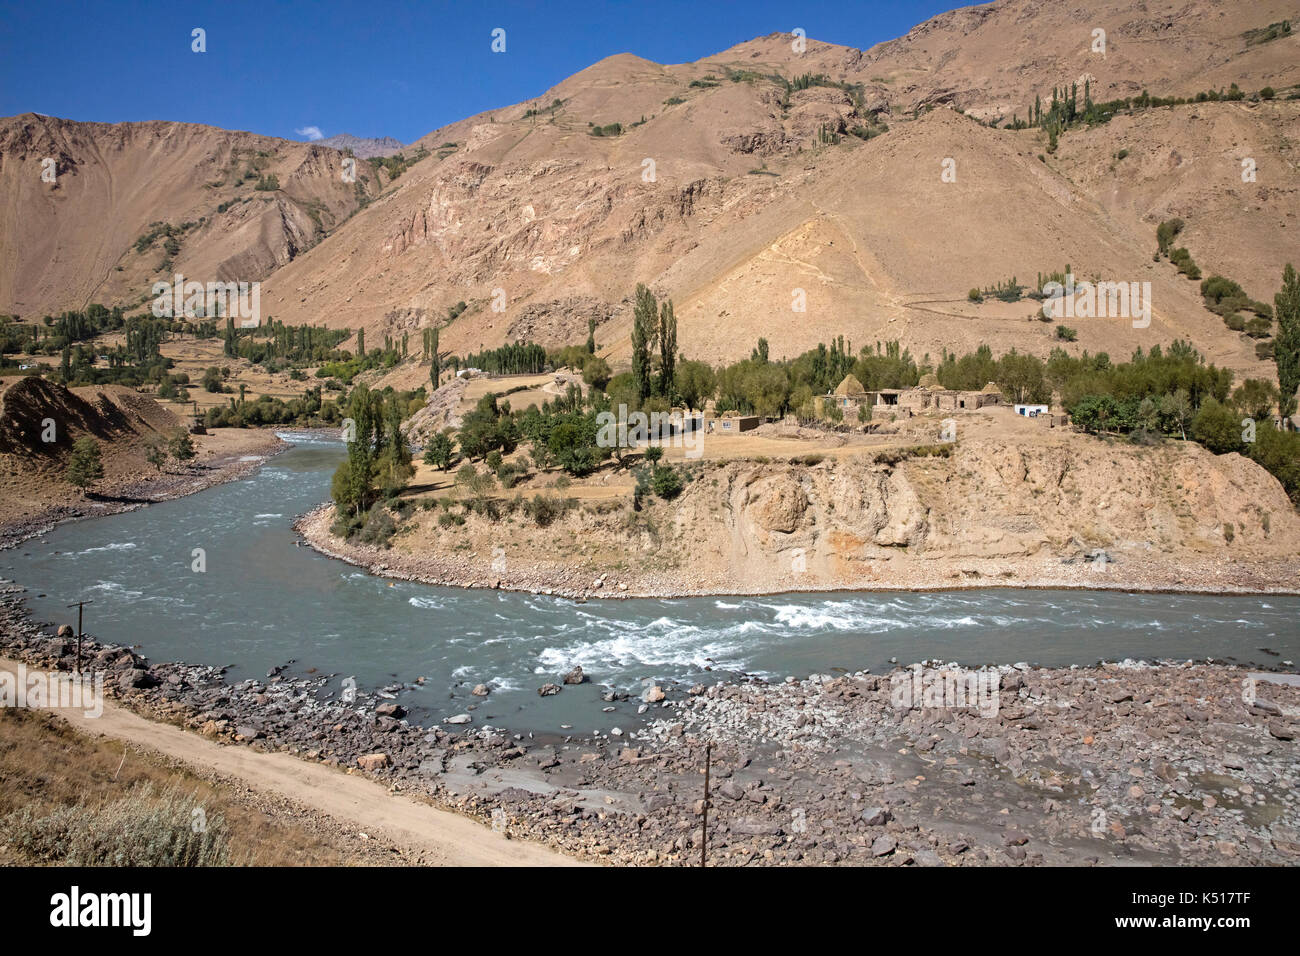 Kleines afghanisches Dorf und der Pamir Highway / M41 entlang des Pamir Flusses, bildet die Grenze zwischen Tadschikistan und Afghanistan Stockfoto